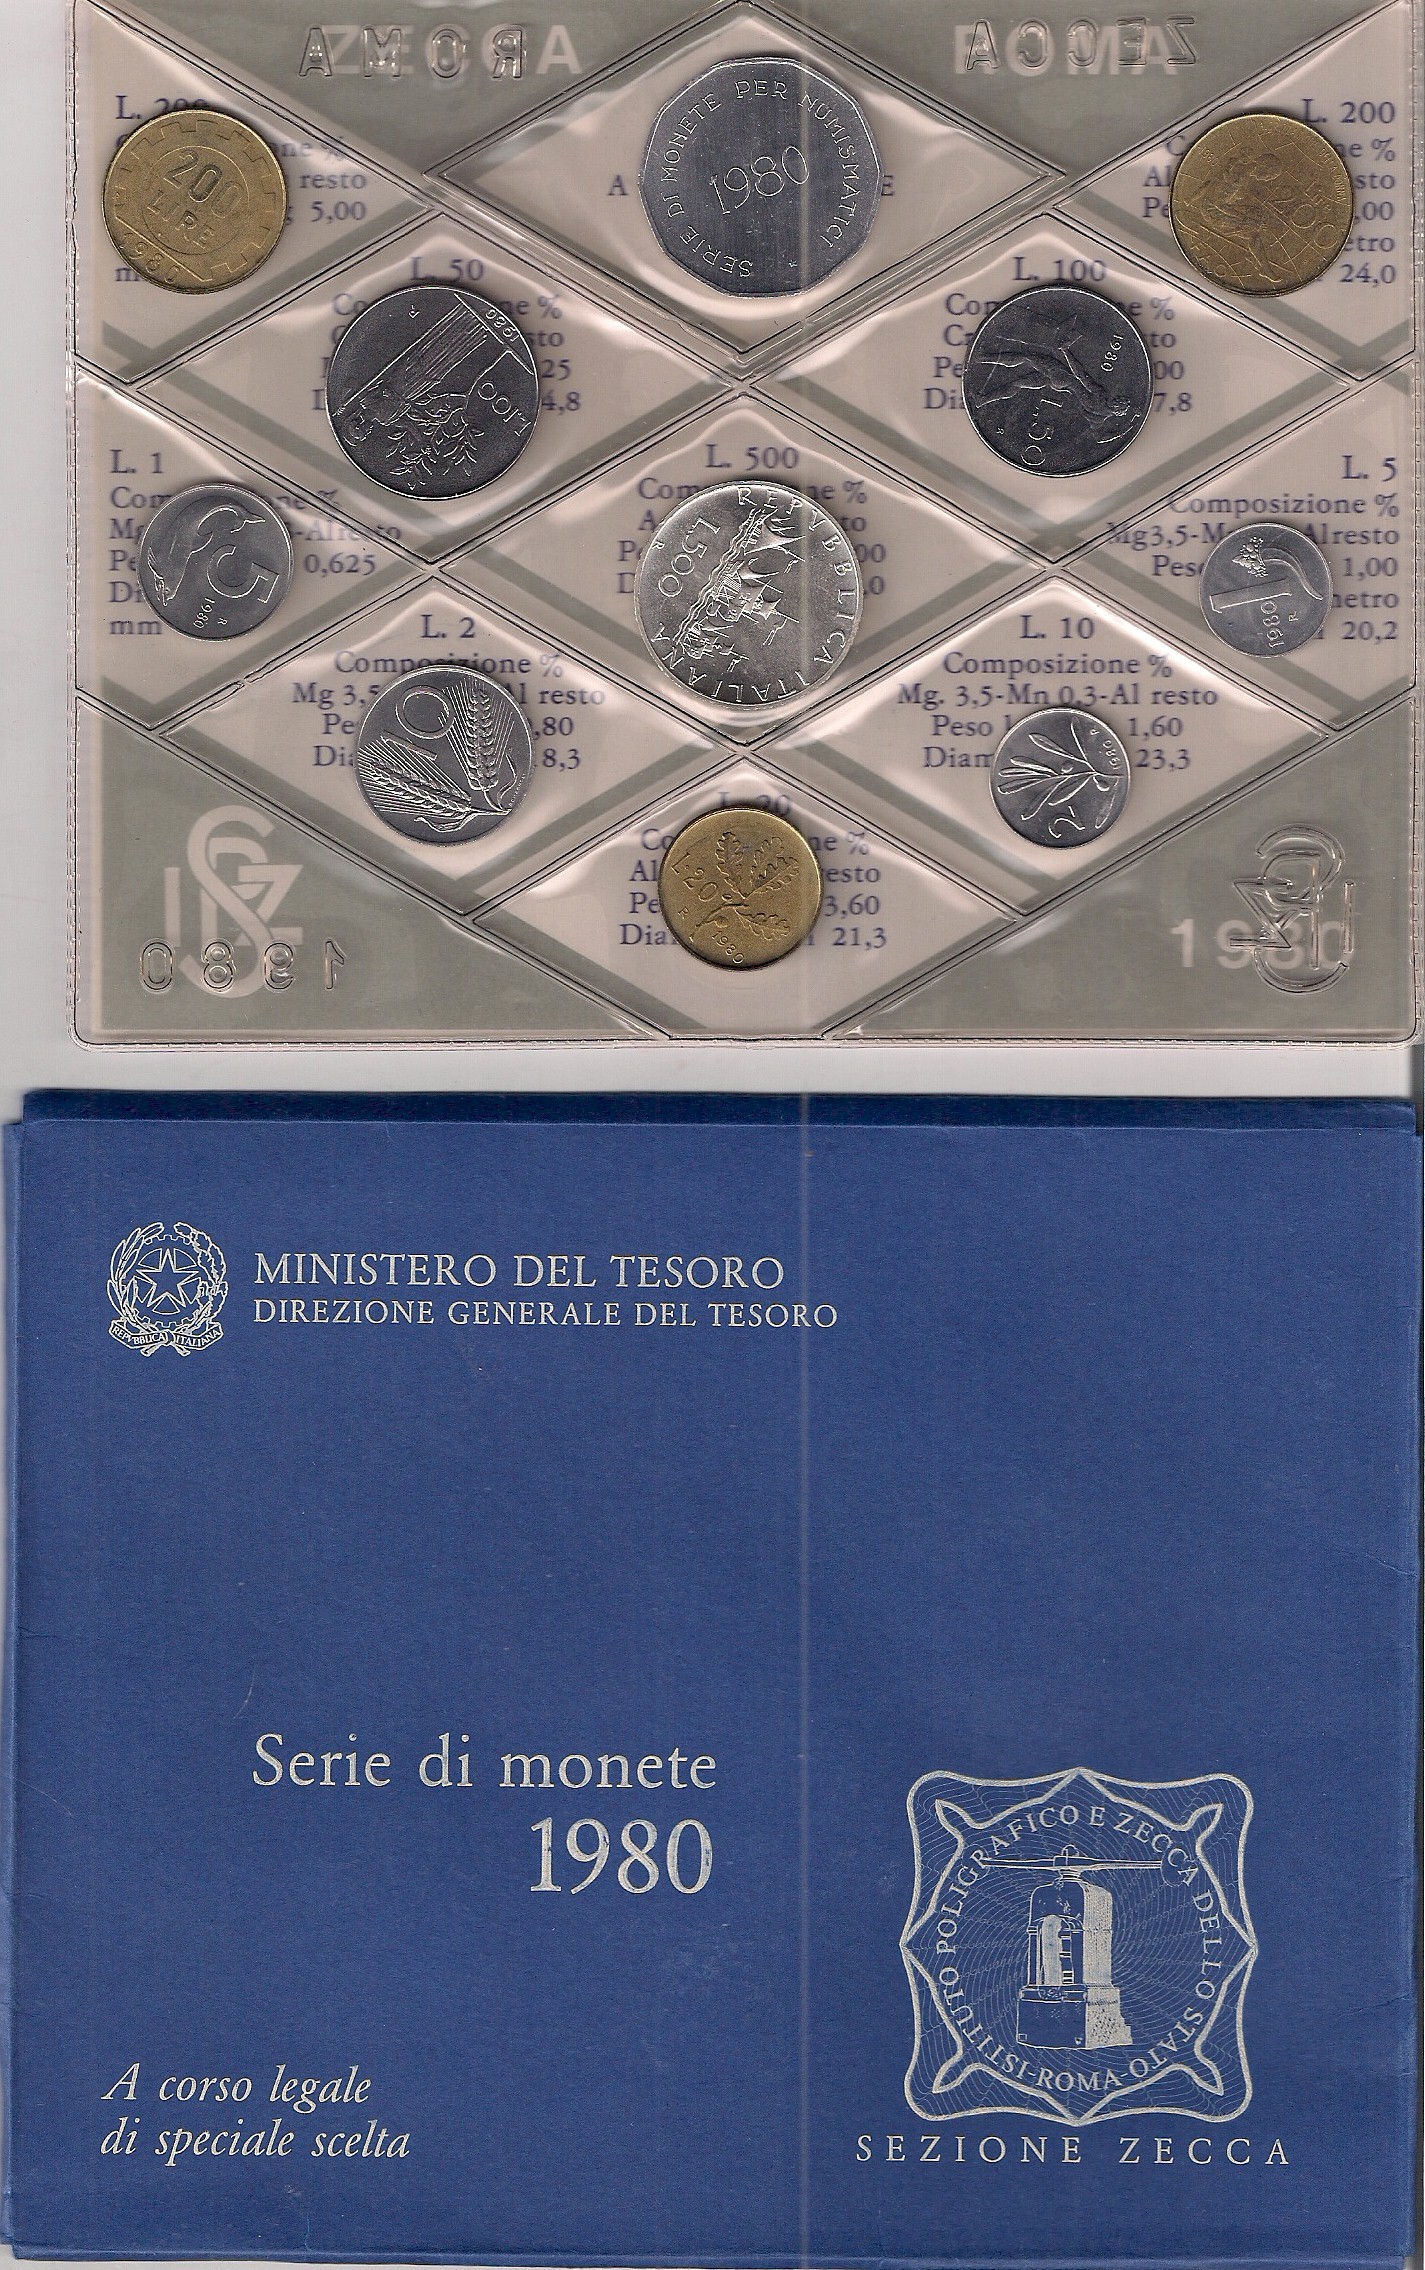 Serie completa di 11 monete confezionate dalla Zecca Italiana